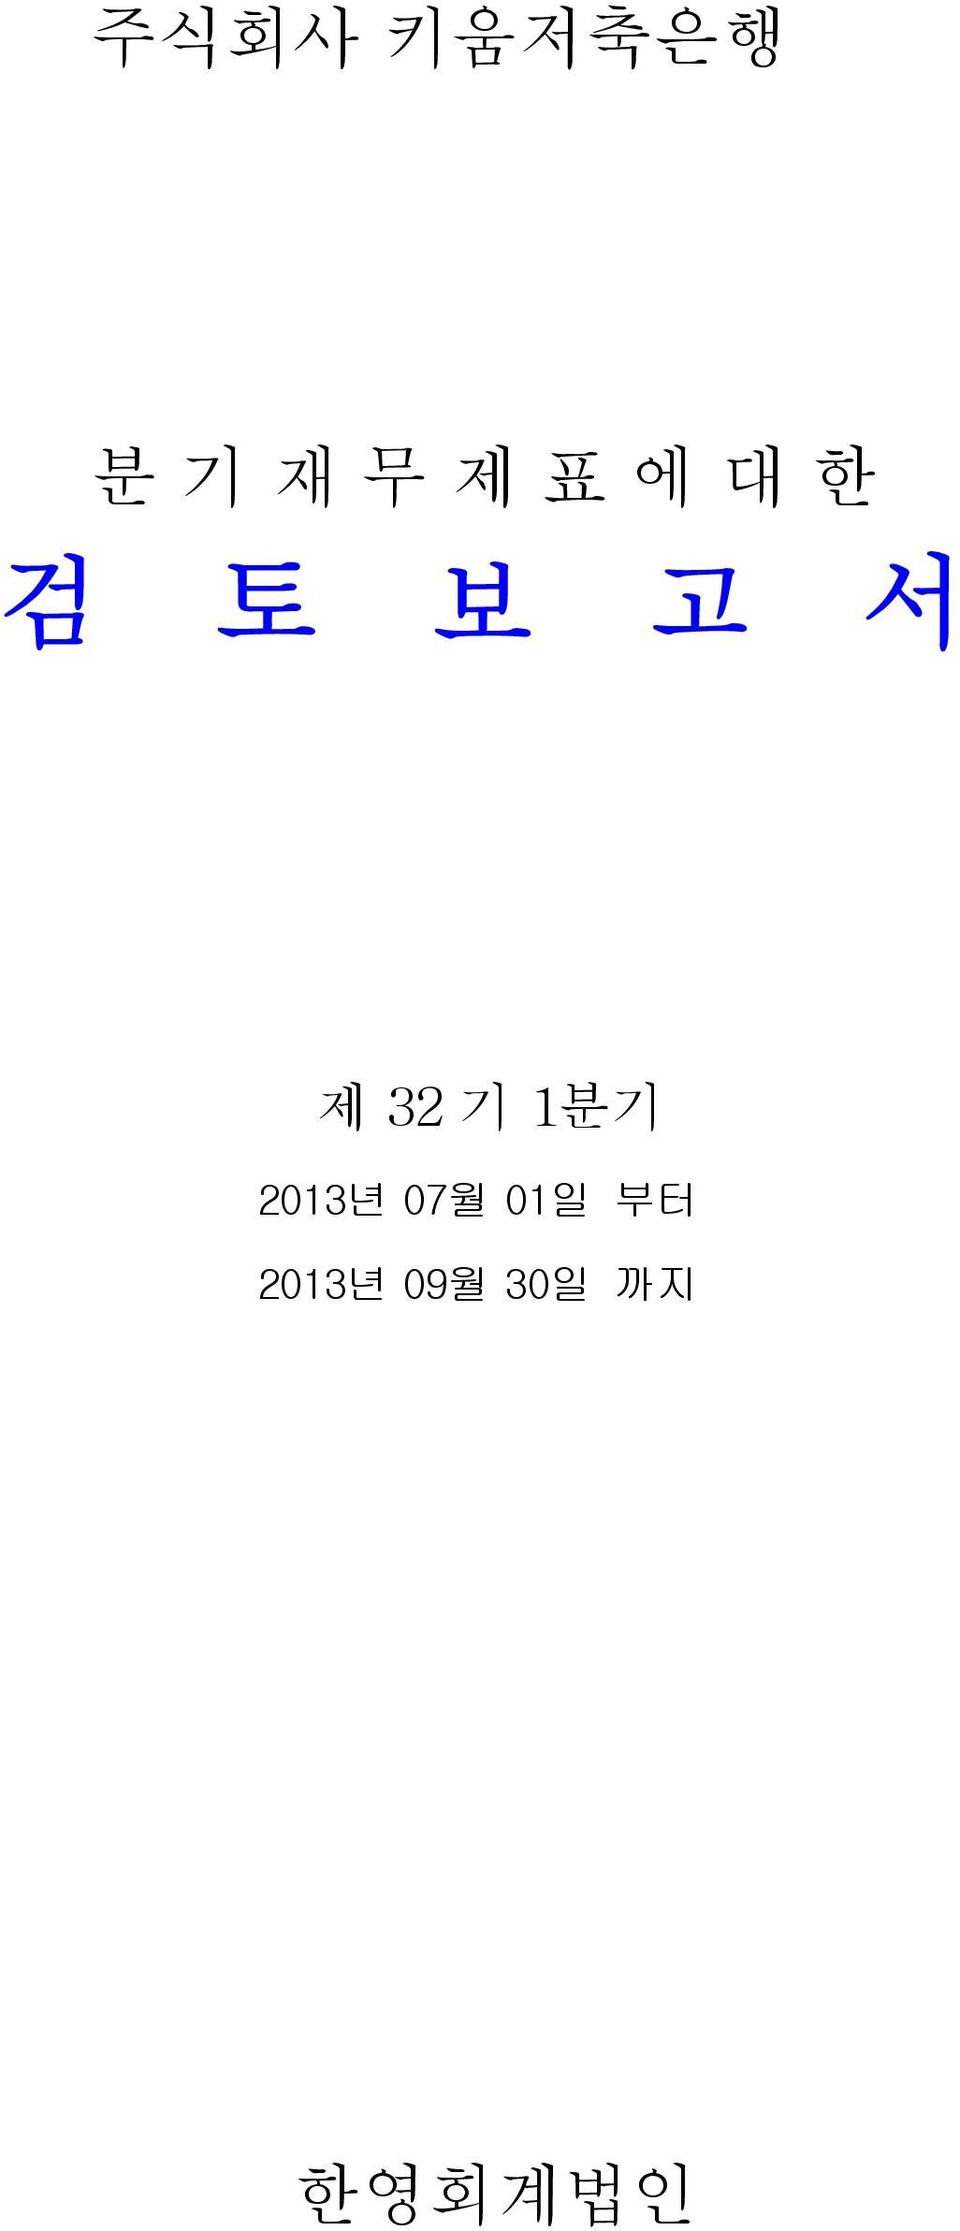 기 1분기 2013년 07월 01일 부터